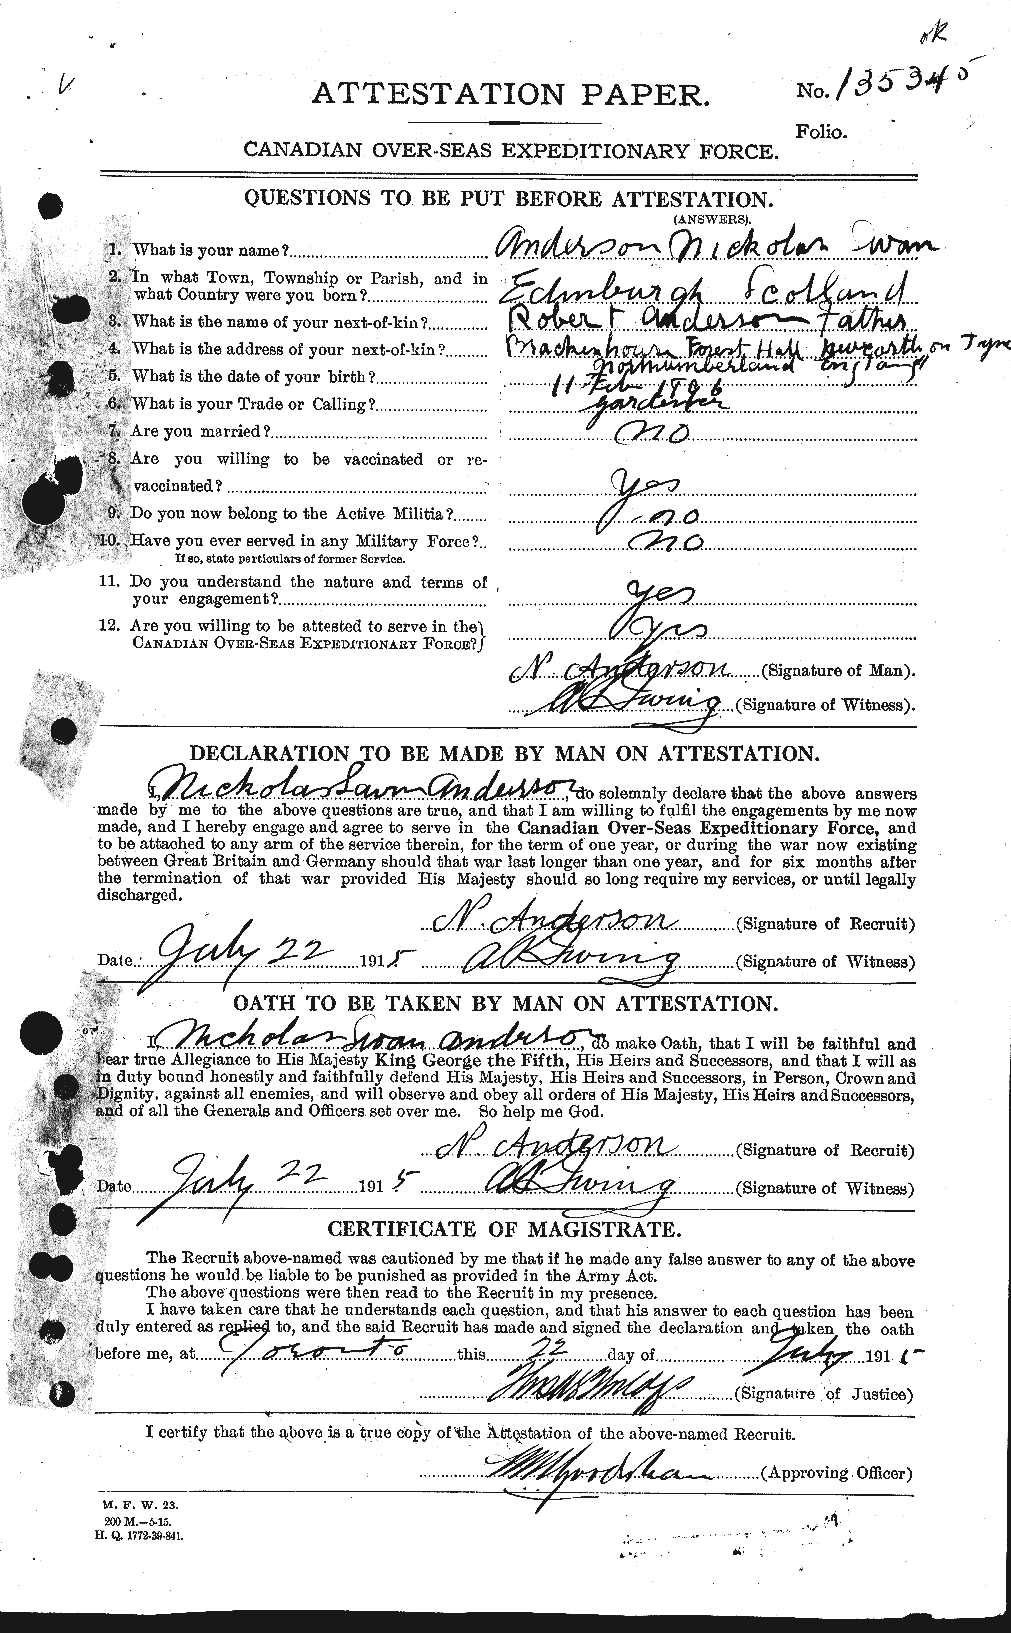 Dossiers du Personnel de la Première Guerre mondiale - CEC 207422a